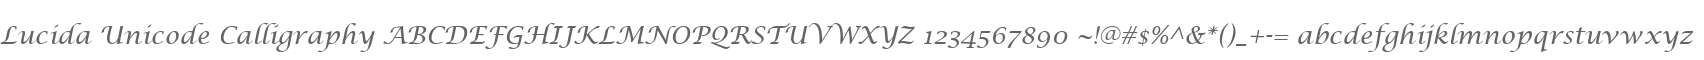 Lucida Unicode Calligraphy